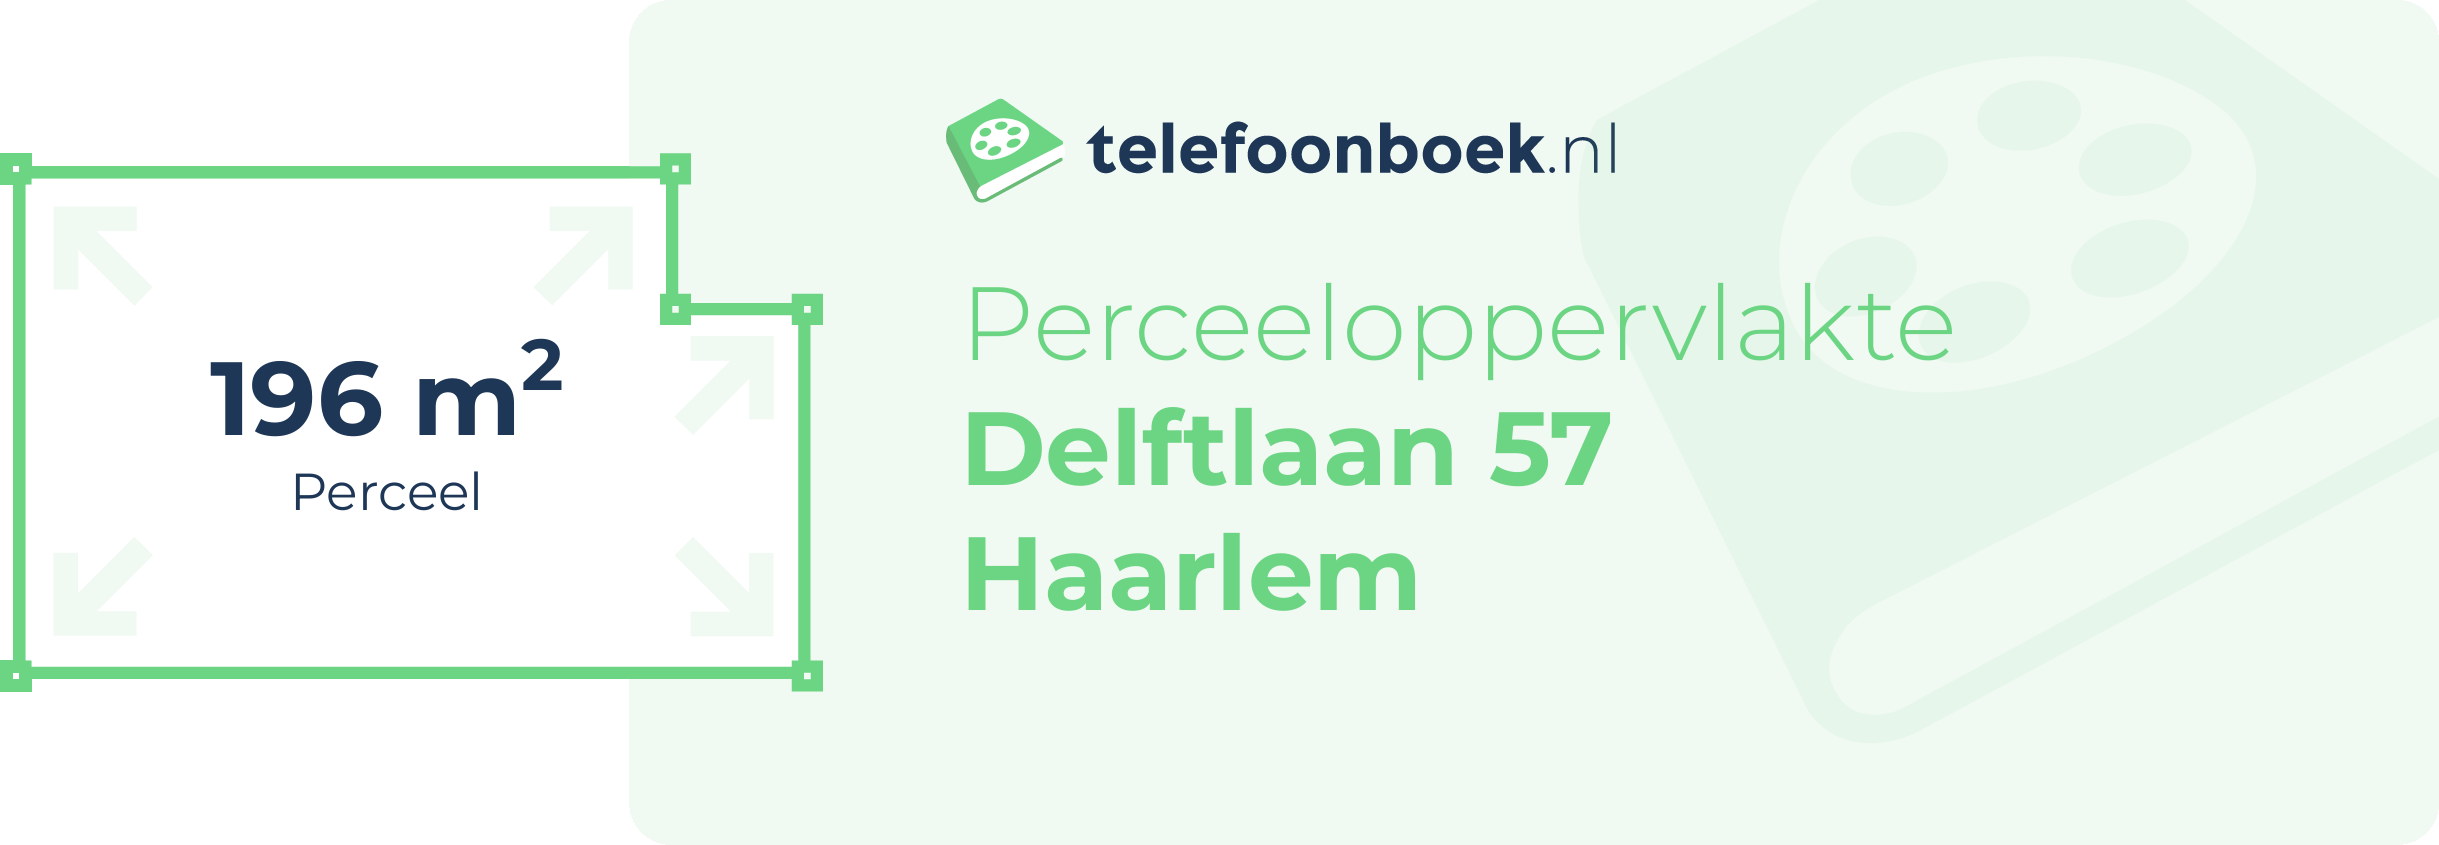 Perceeloppervlakte Delftlaan 57 Haarlem